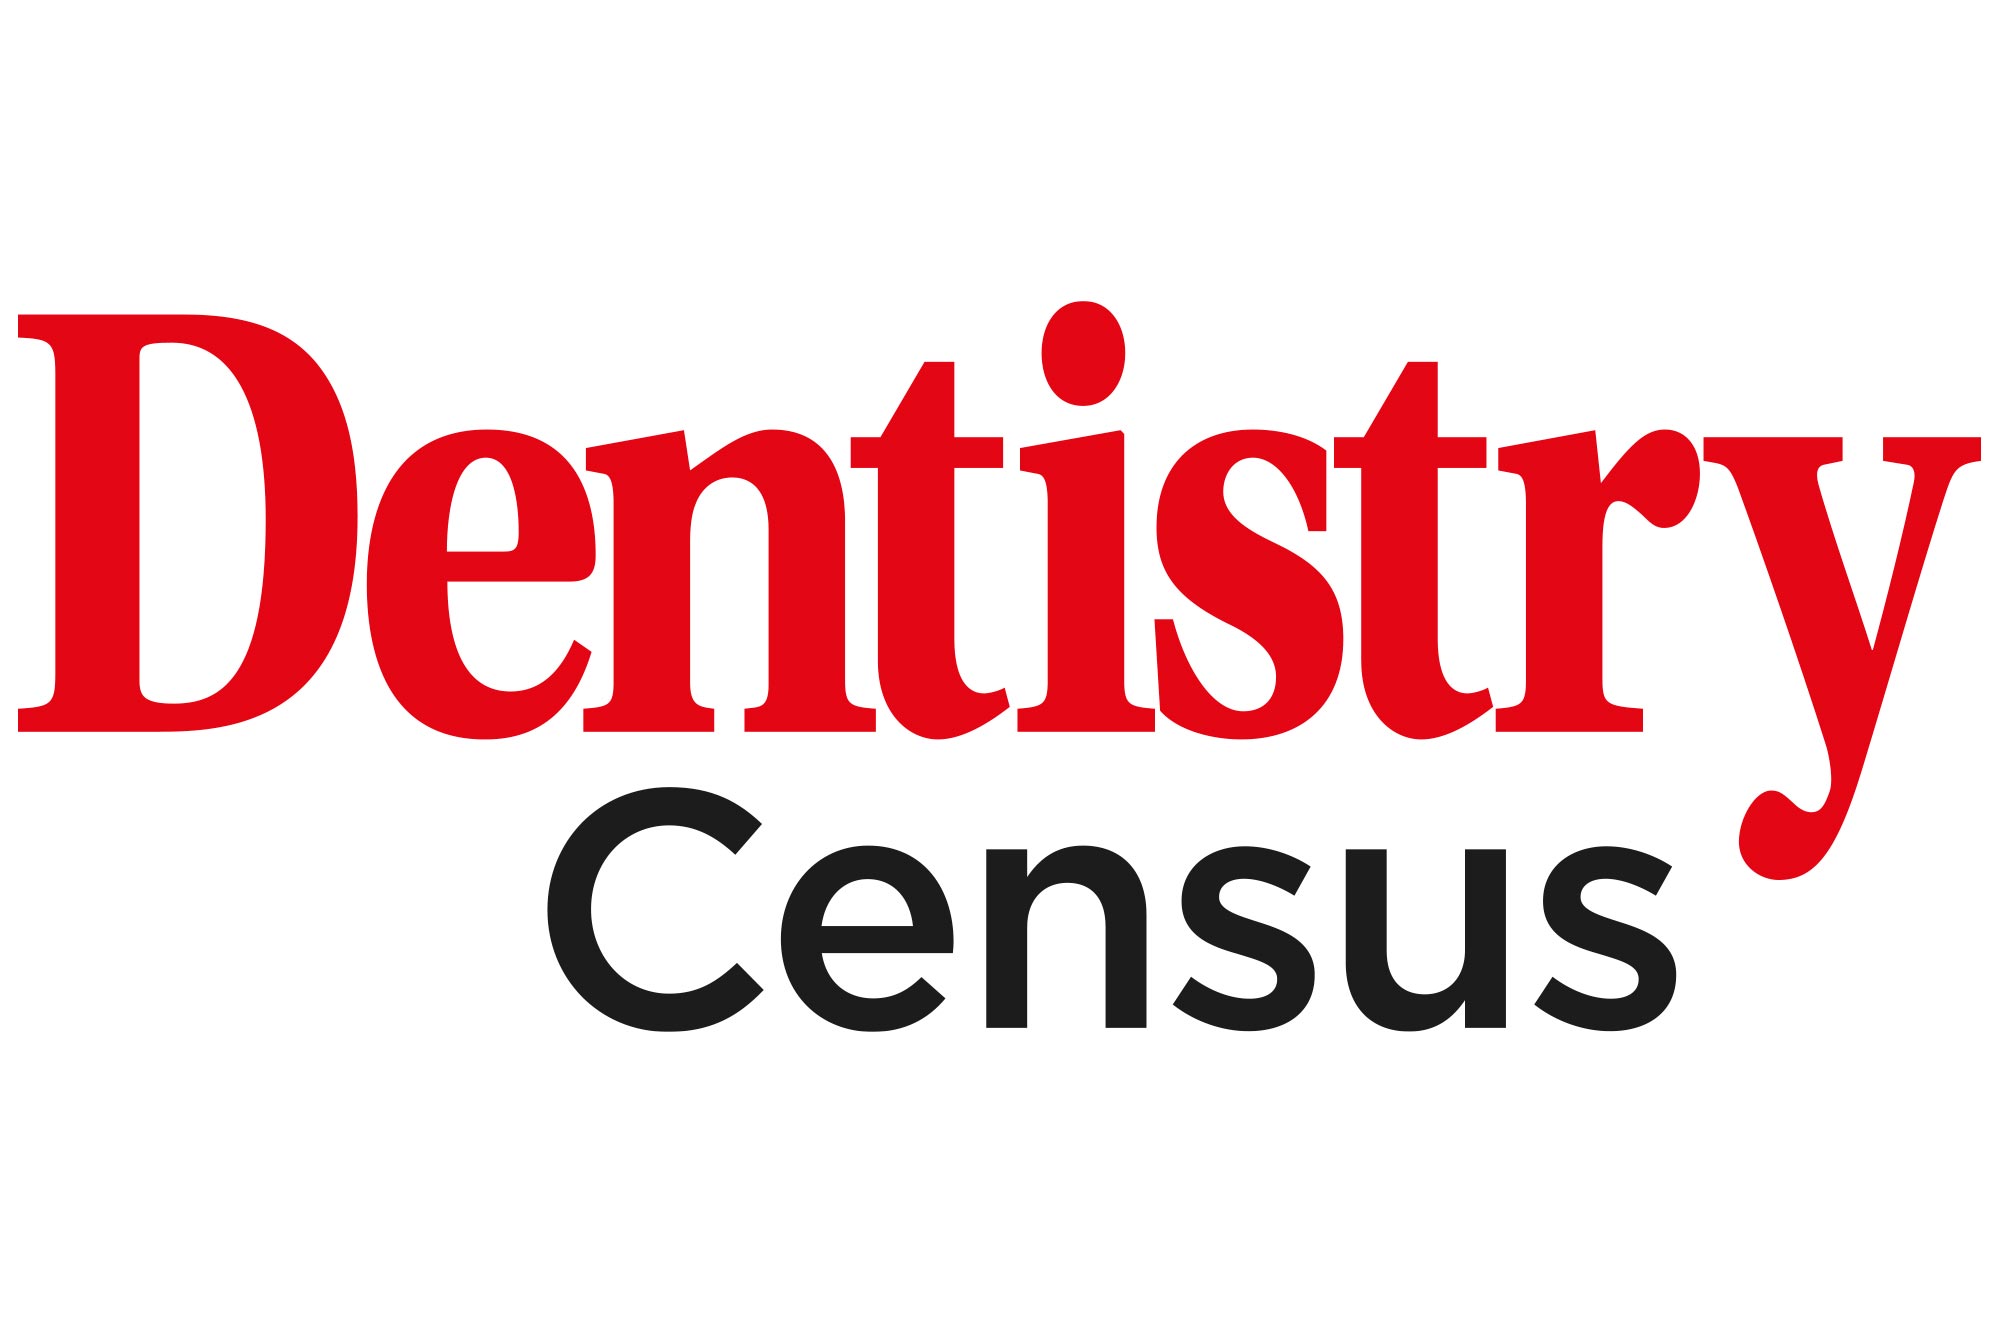 Dentistry Census